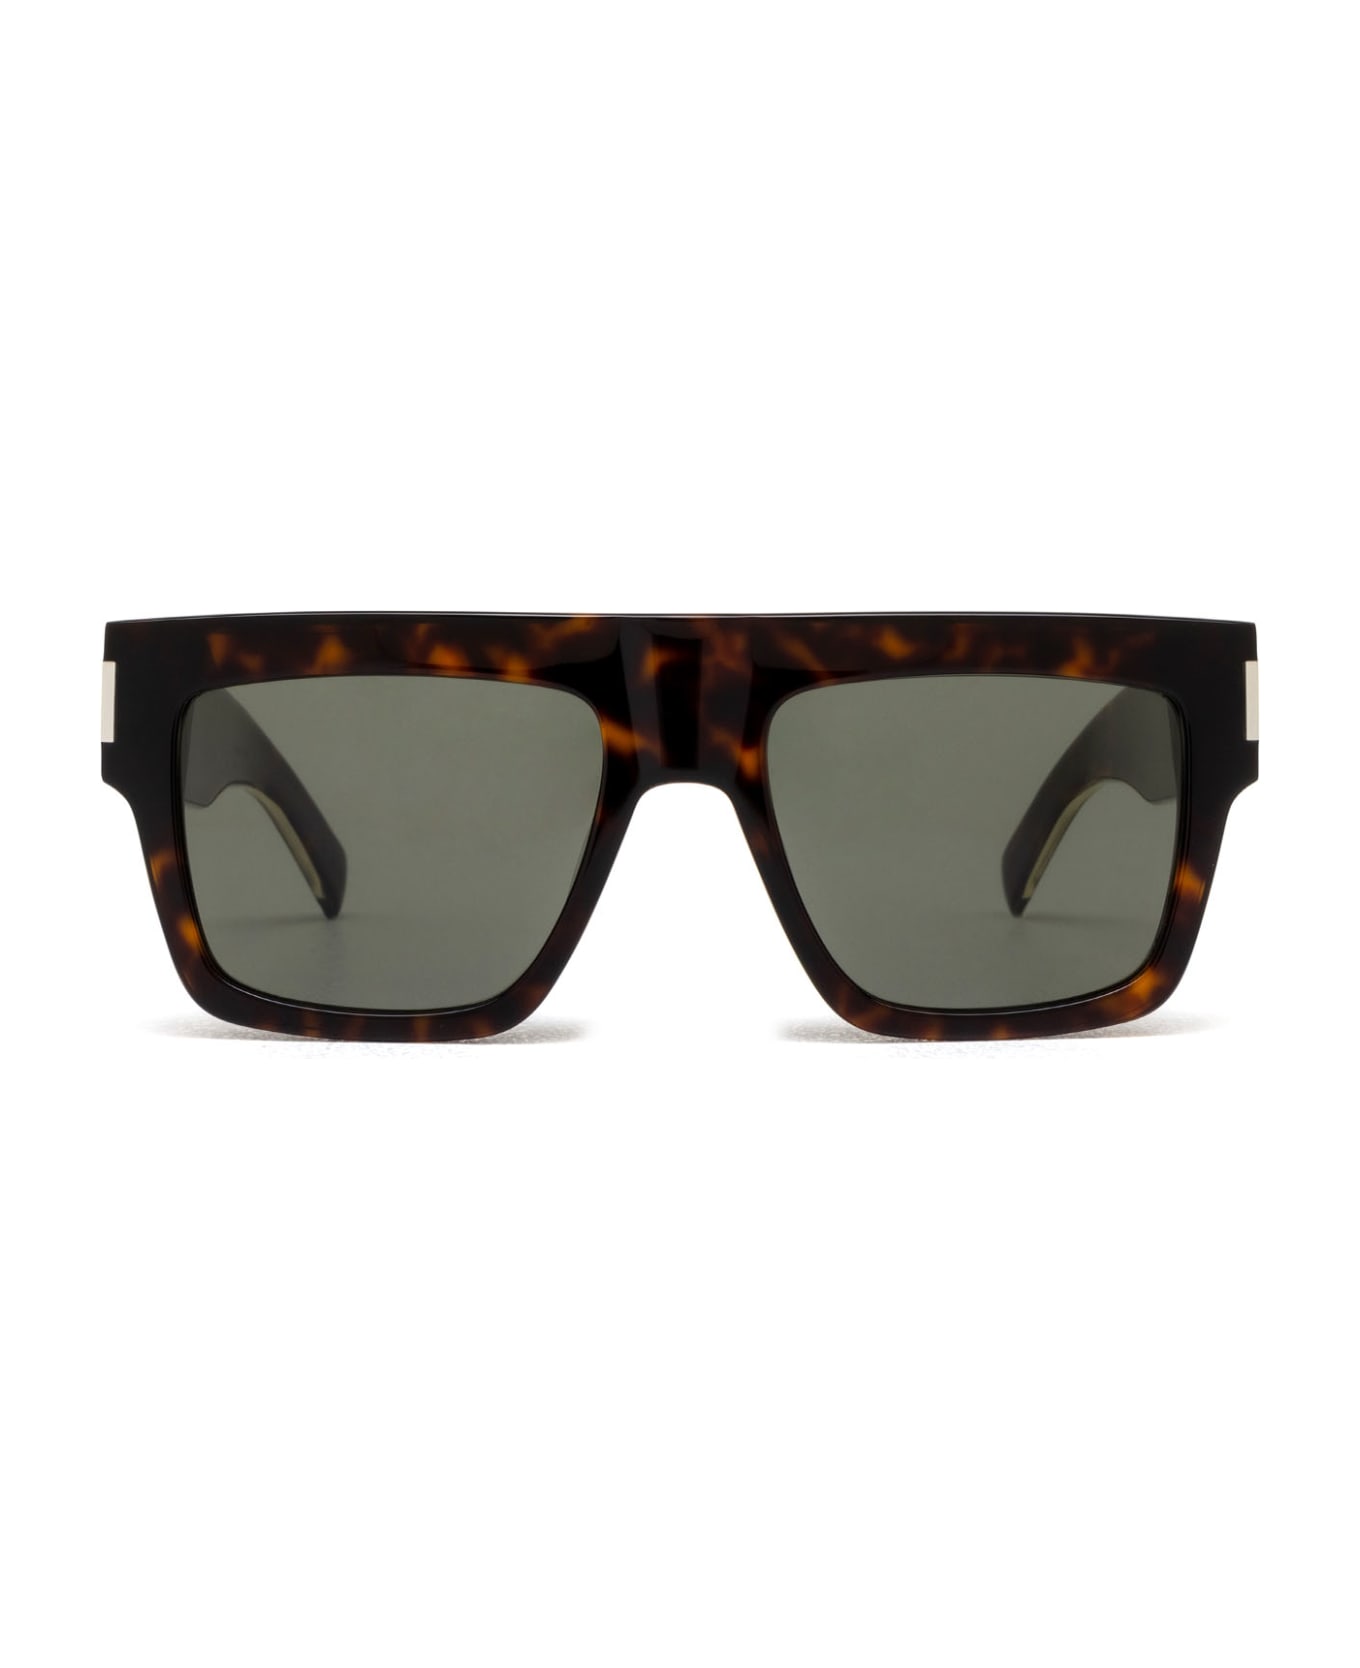 Saint Laurent Eyewear Sl 628 Havana Sunglasses - Havana